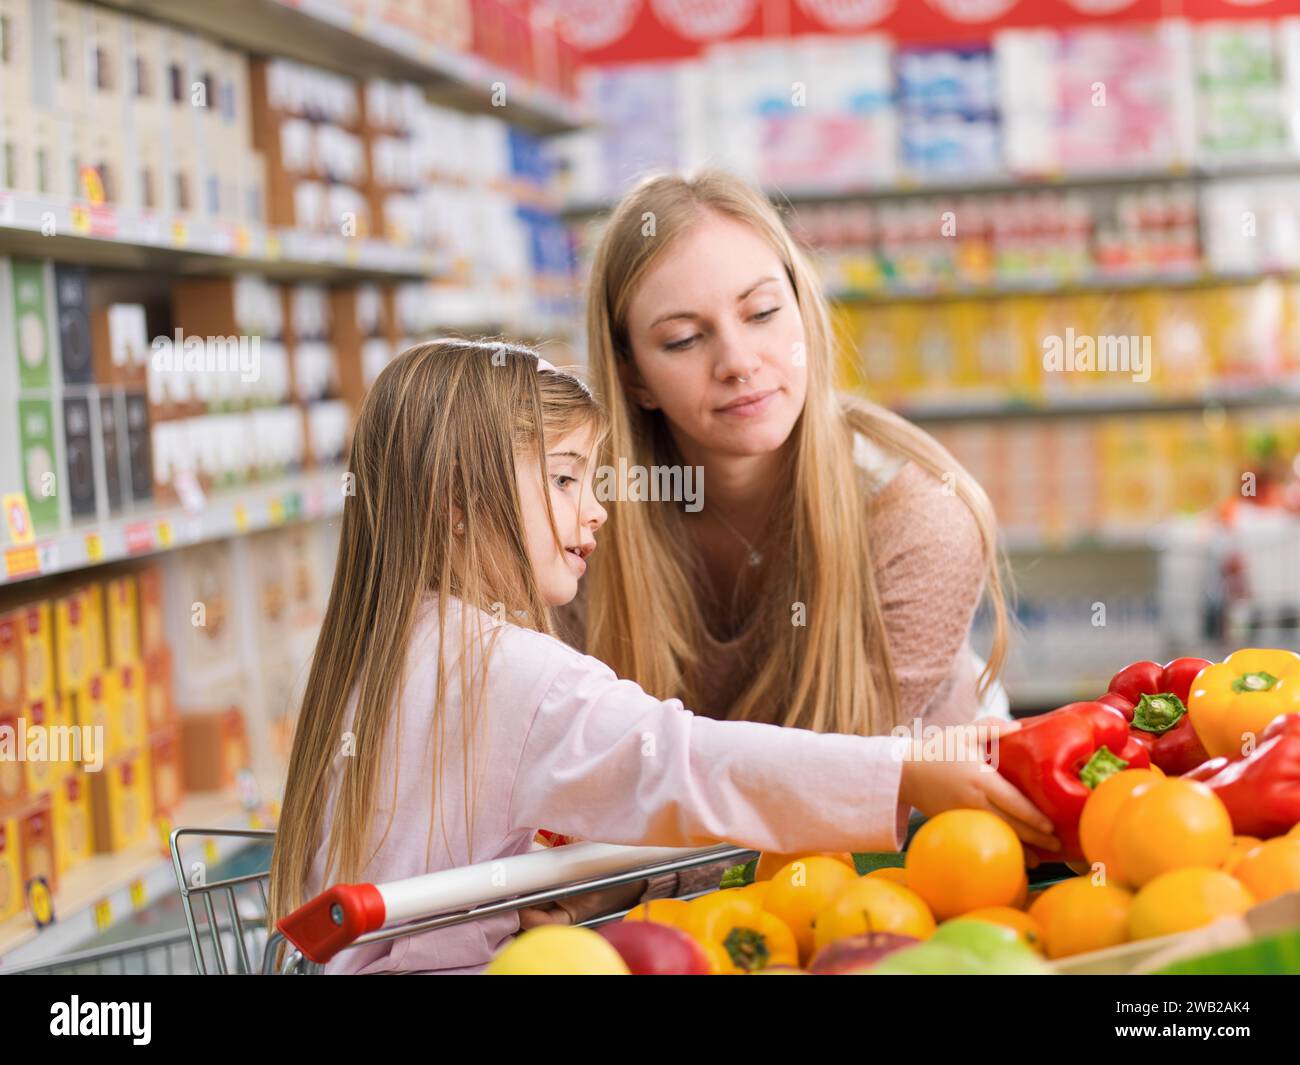 Mutter und Tochter kaufen zusammen Lebensmittel im Supermarkt, das Mädchen pflückt Gemüse in der Sparte Stockfoto